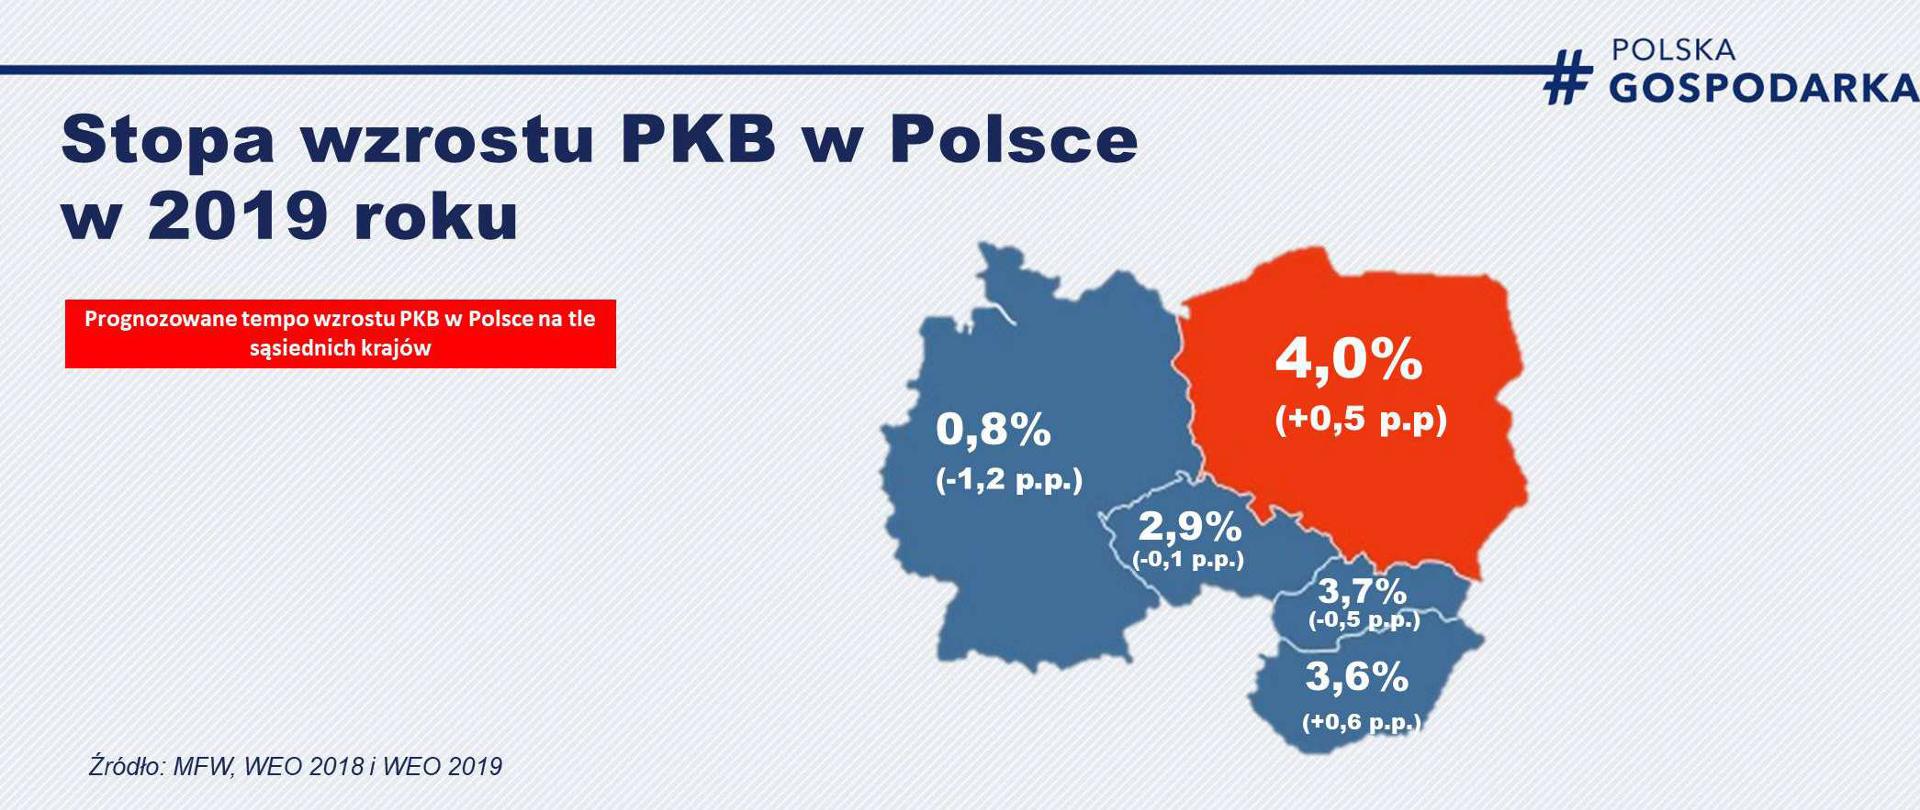 Rysunek na tle mapy przedstawia prognozy dot. wzrostu PKB Polski w 2019 roku na tle innych krajów